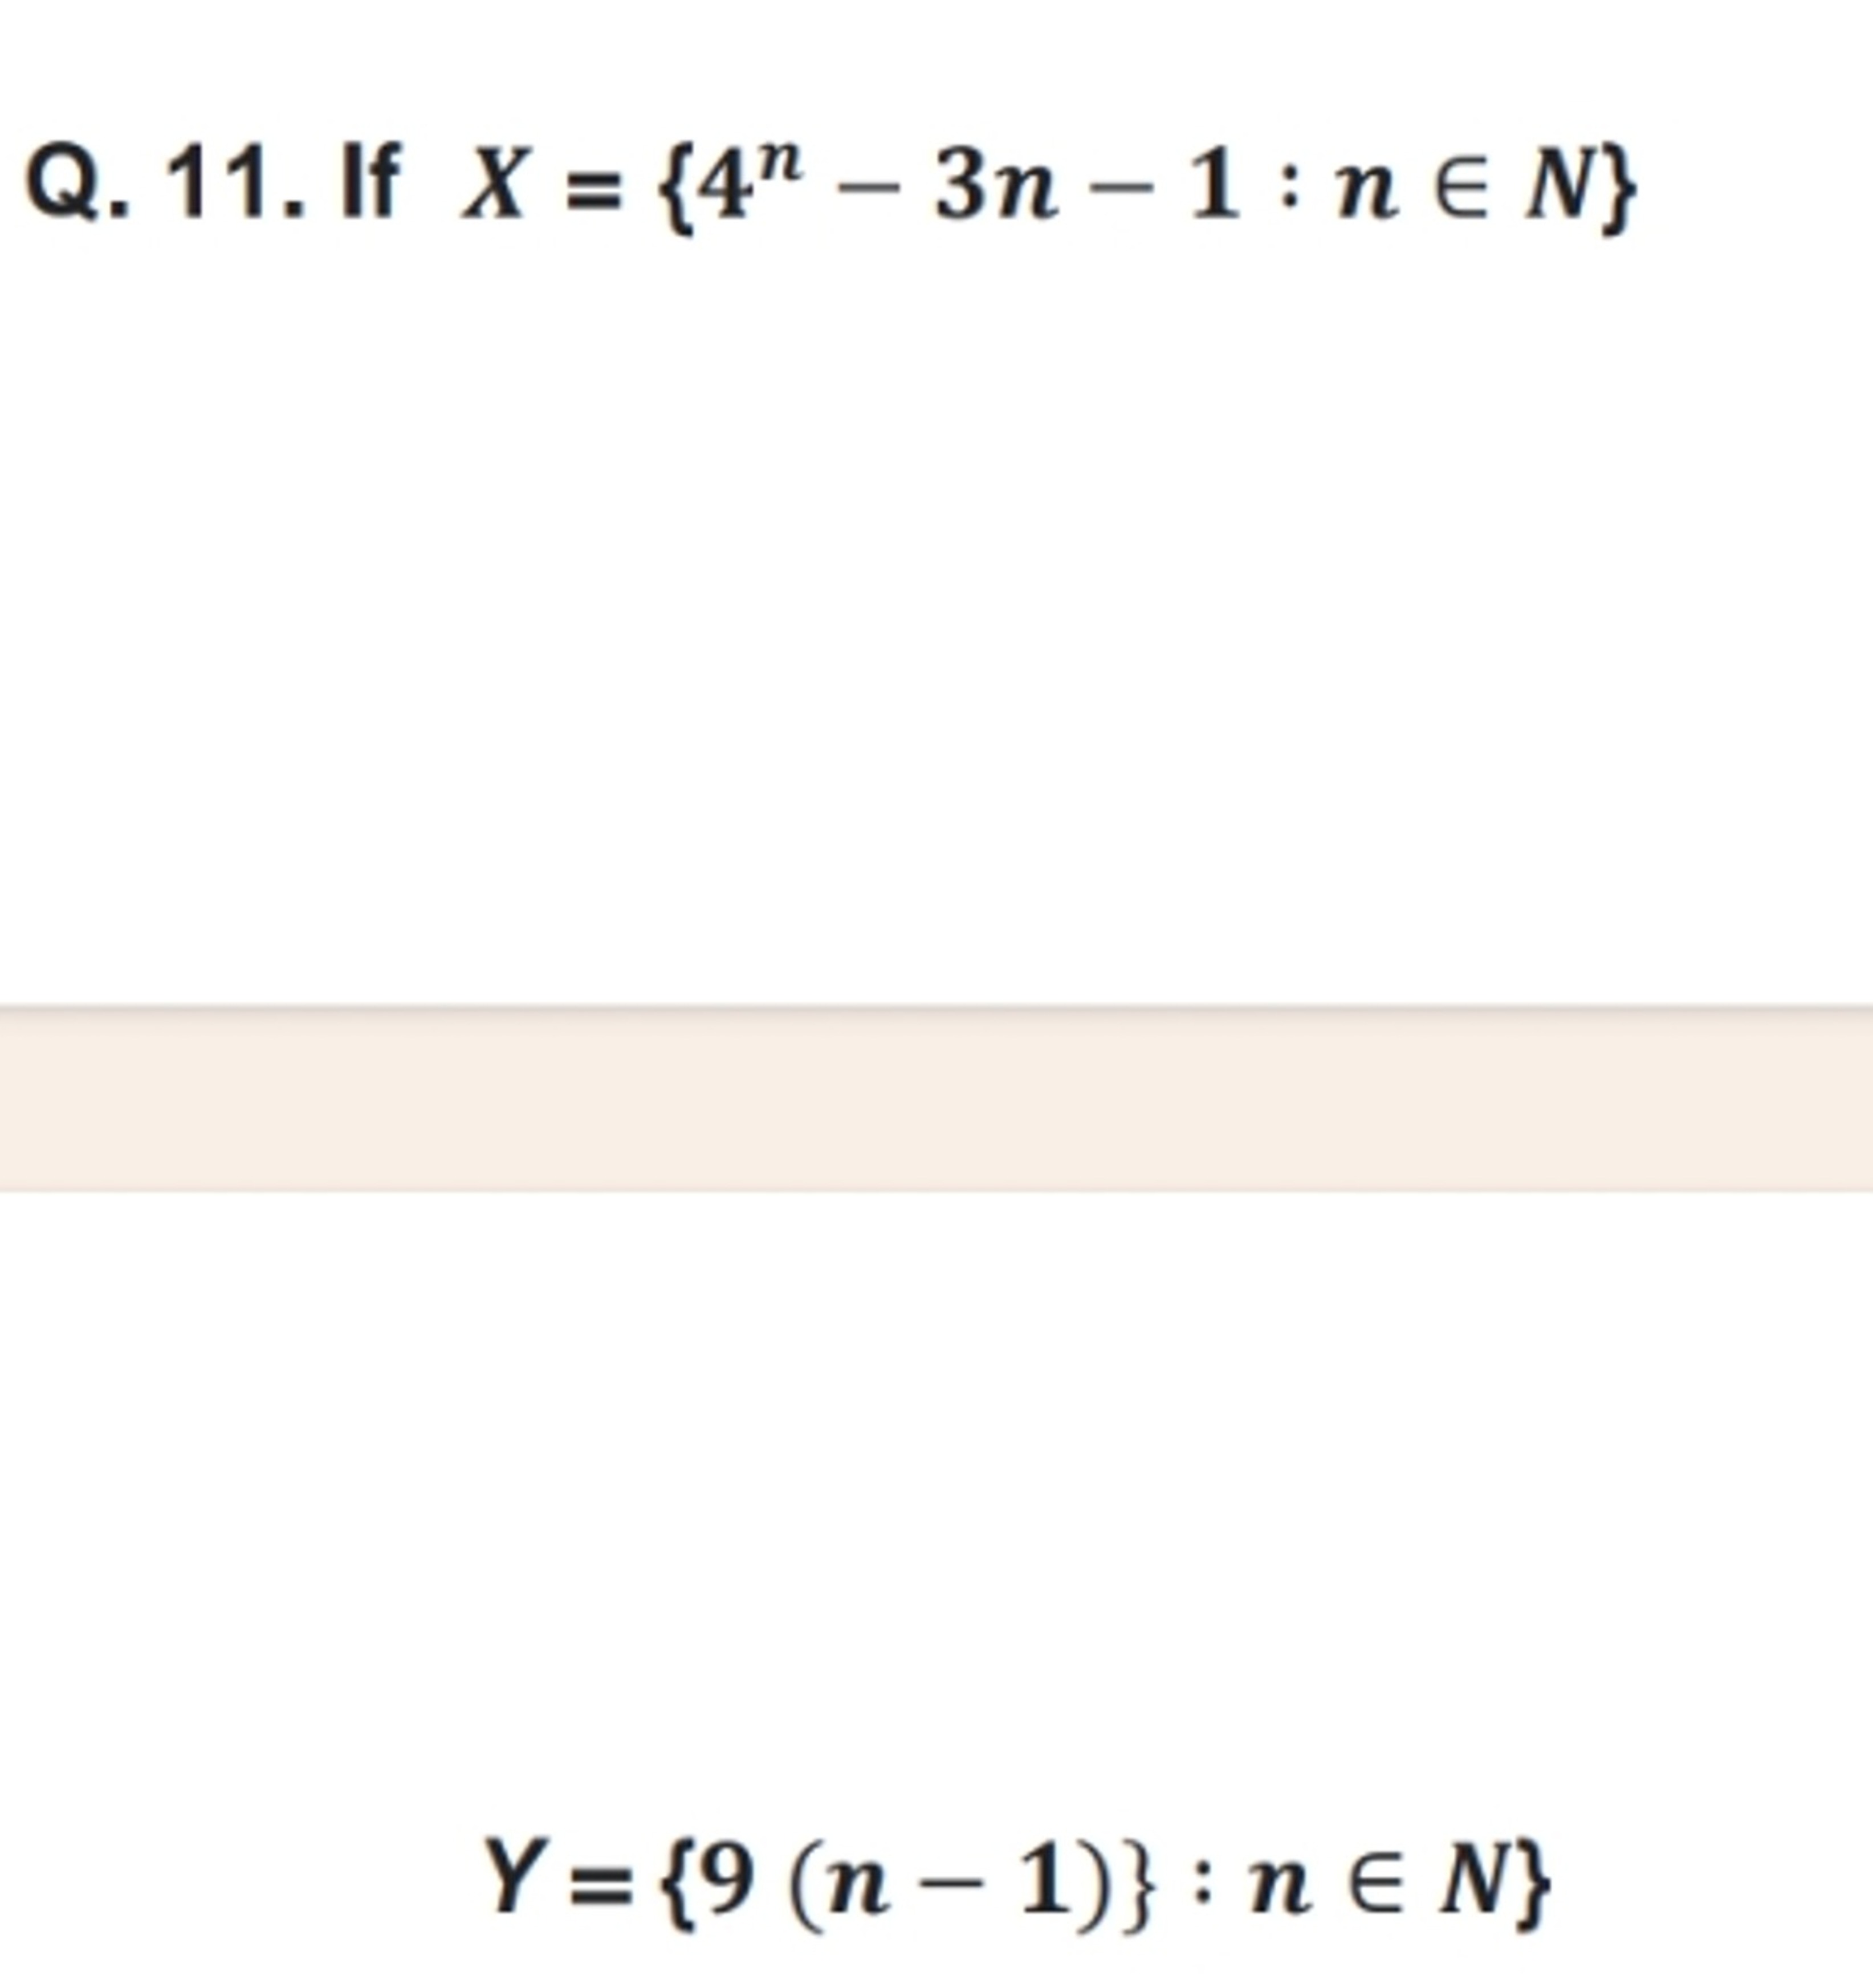 Q. 11. If X={4n−3n−1:n∈N}
Y={9(n−1)}:n∈N}
